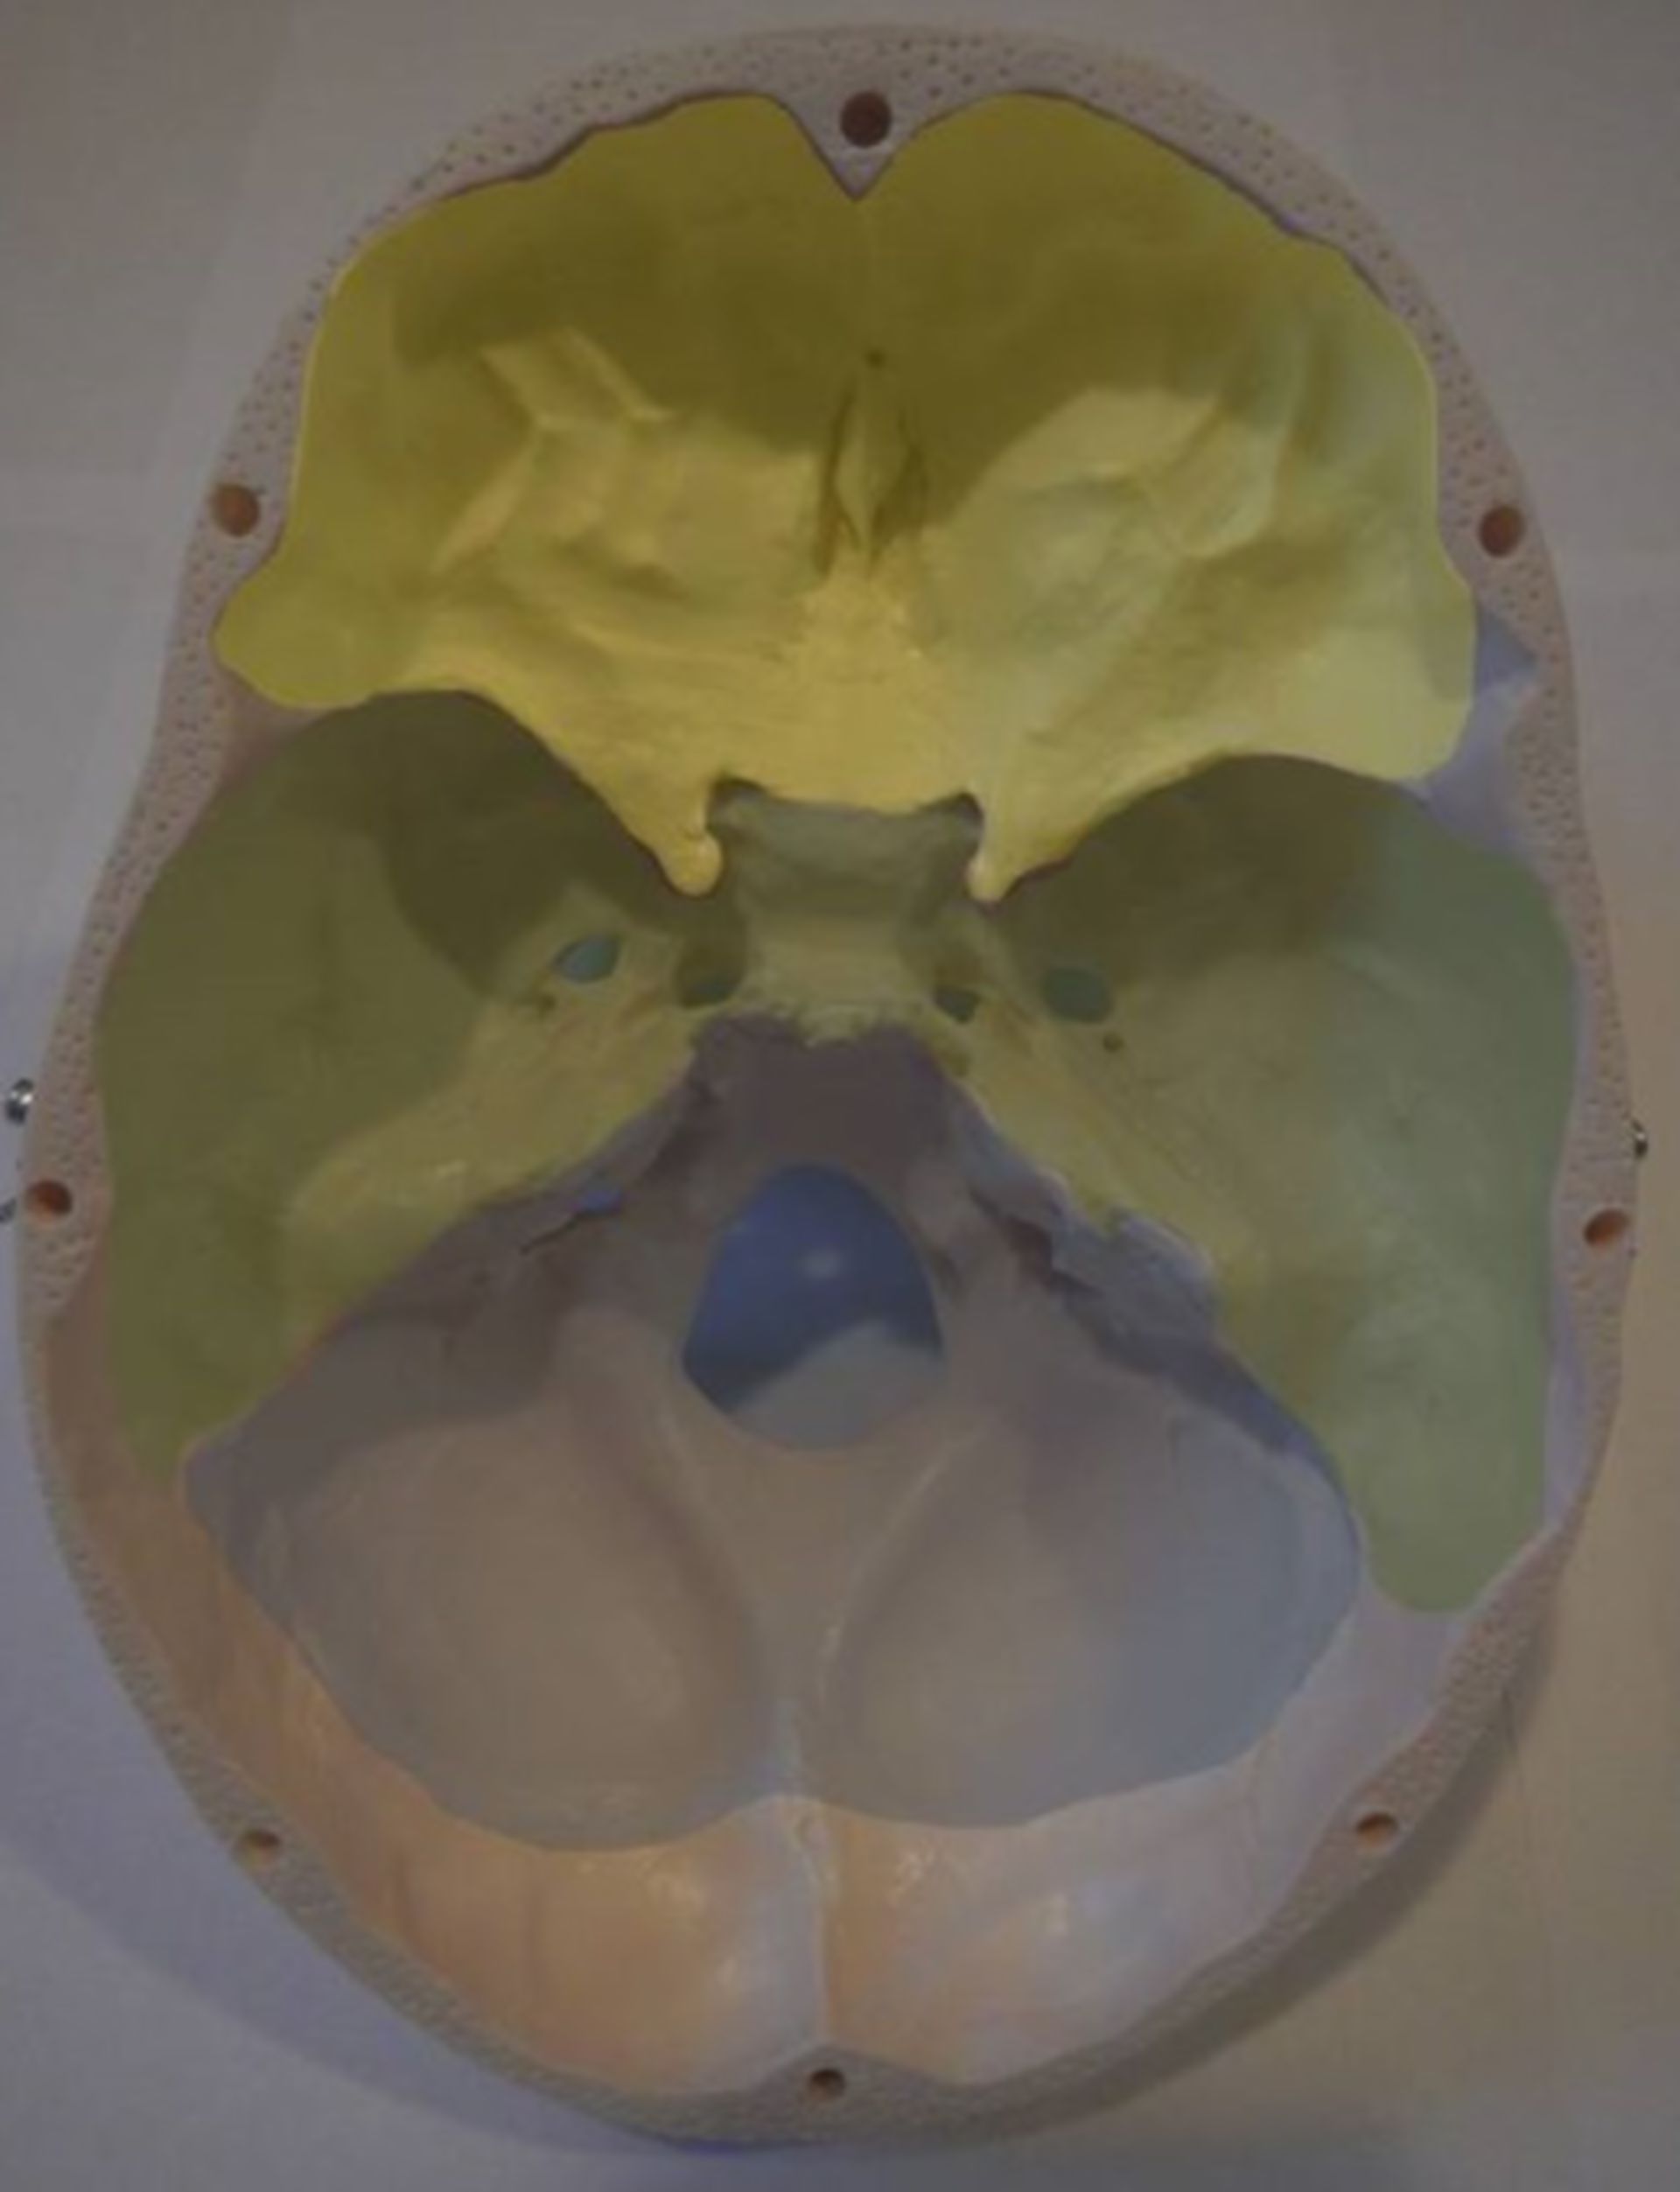 Basis cranii interna